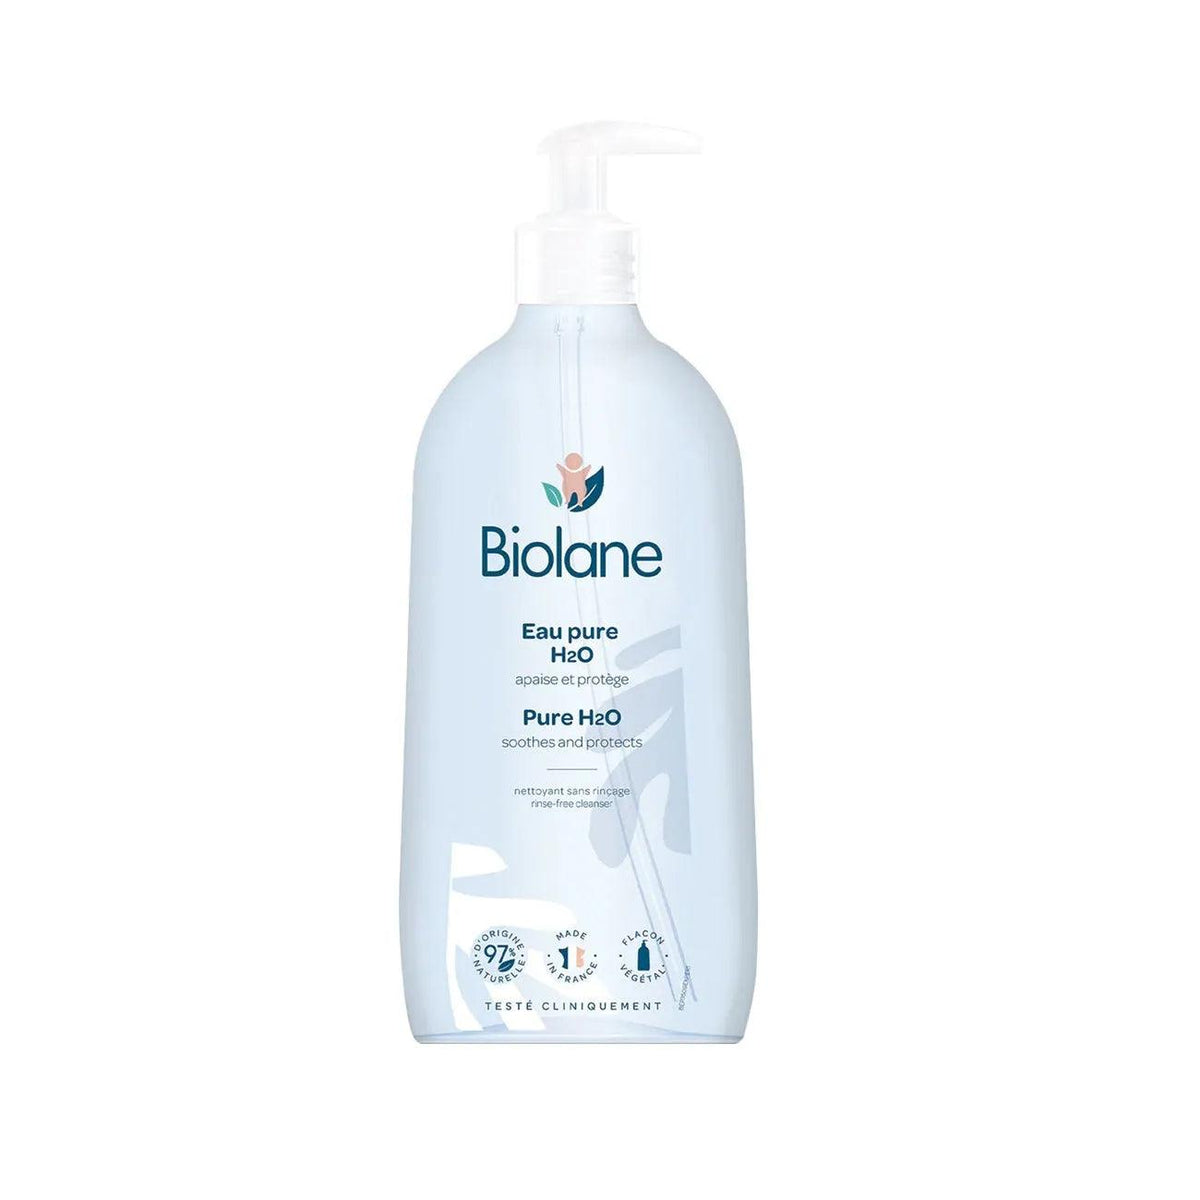 Gel lavant corps et cheveux BIO 500ml Biolane Biolane Expert